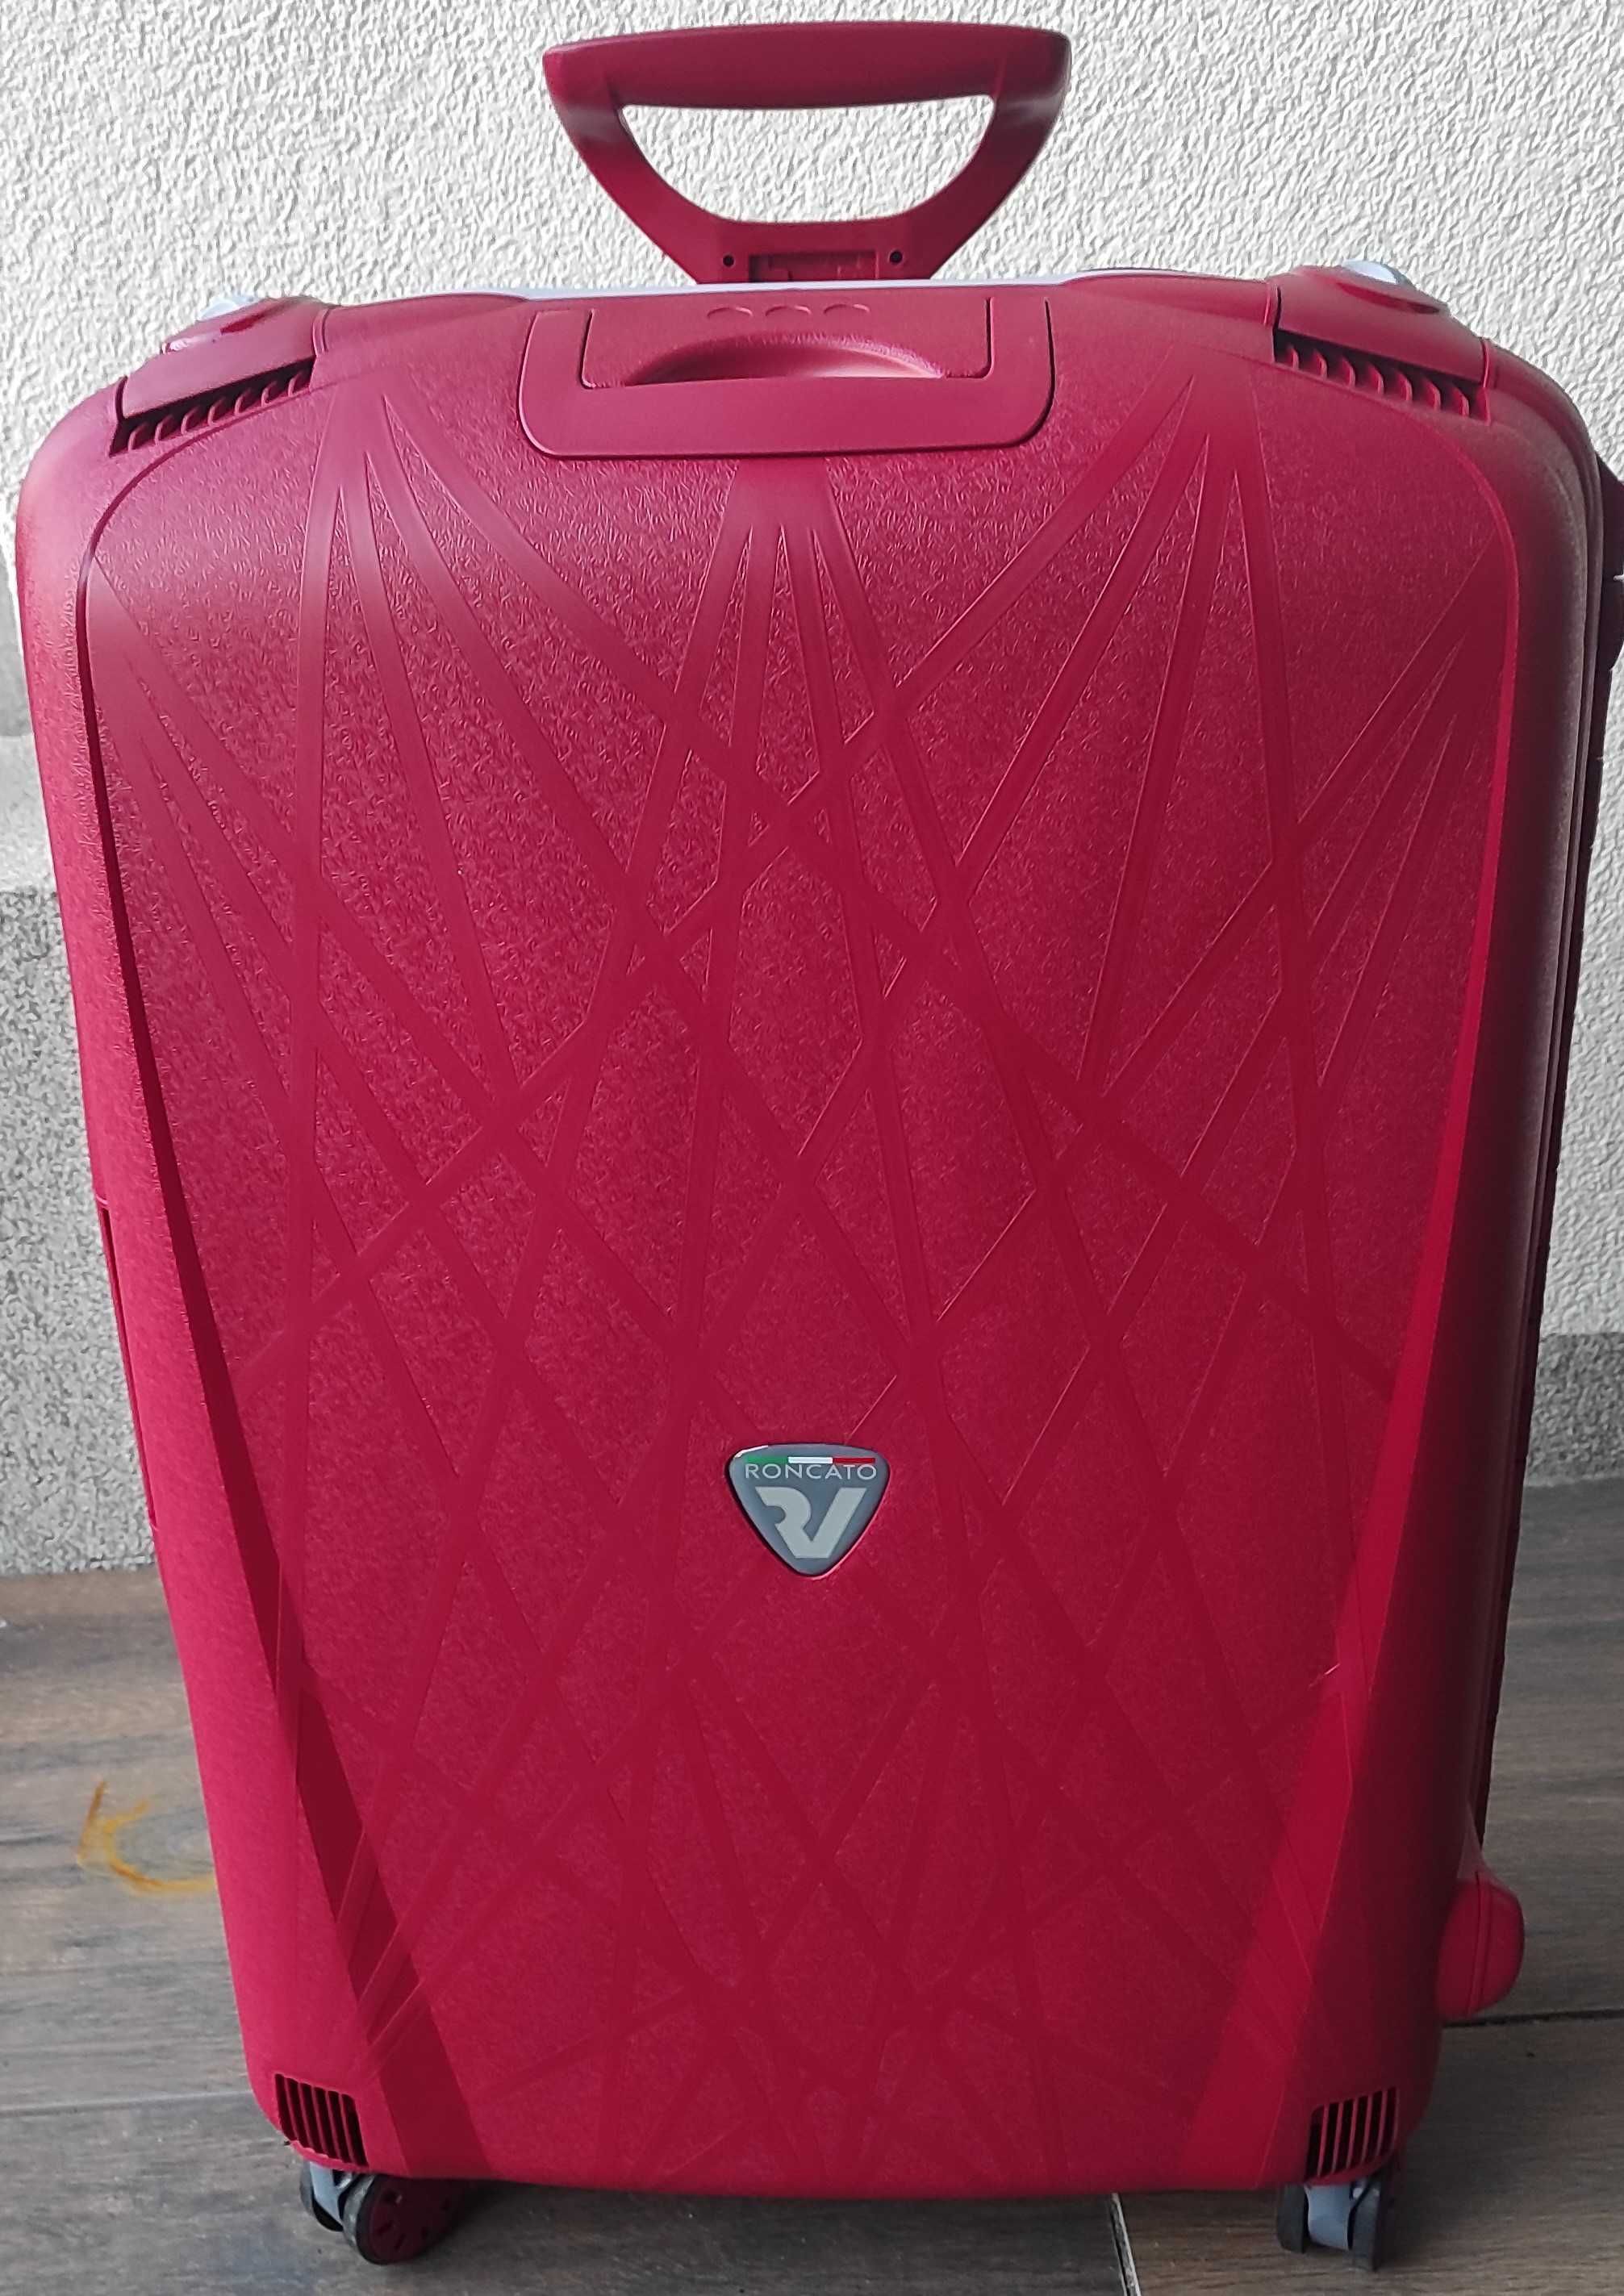 Komplet podróżny Roncato - 2 walizki i kuferek